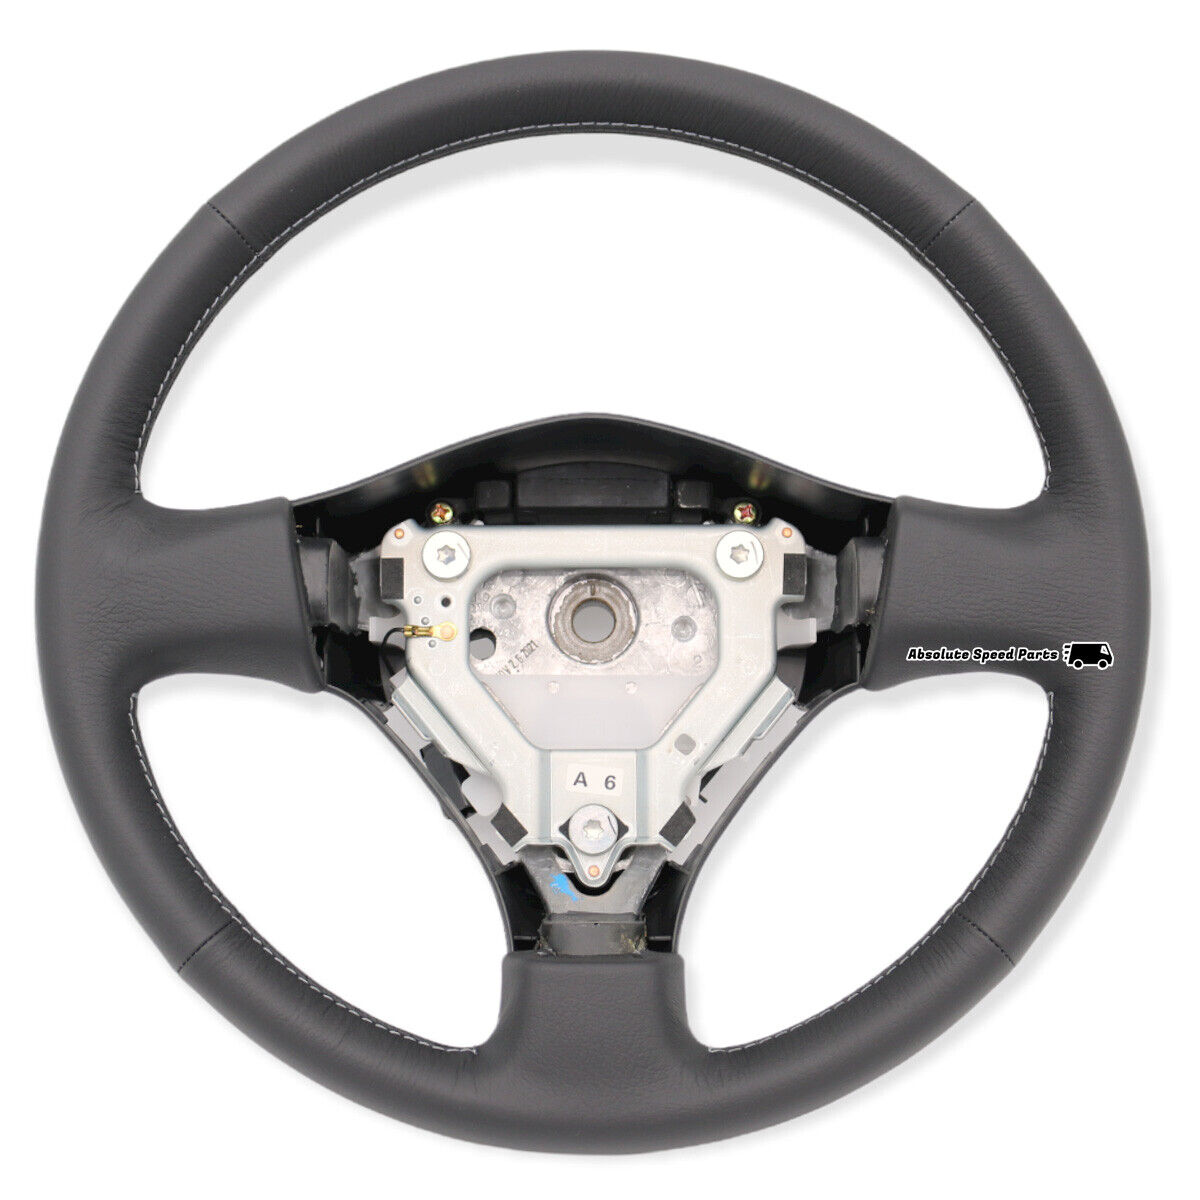 NEW NISSAN OEM Steering Wheel for R34 Skyline GTR BNR34 48430-AB005